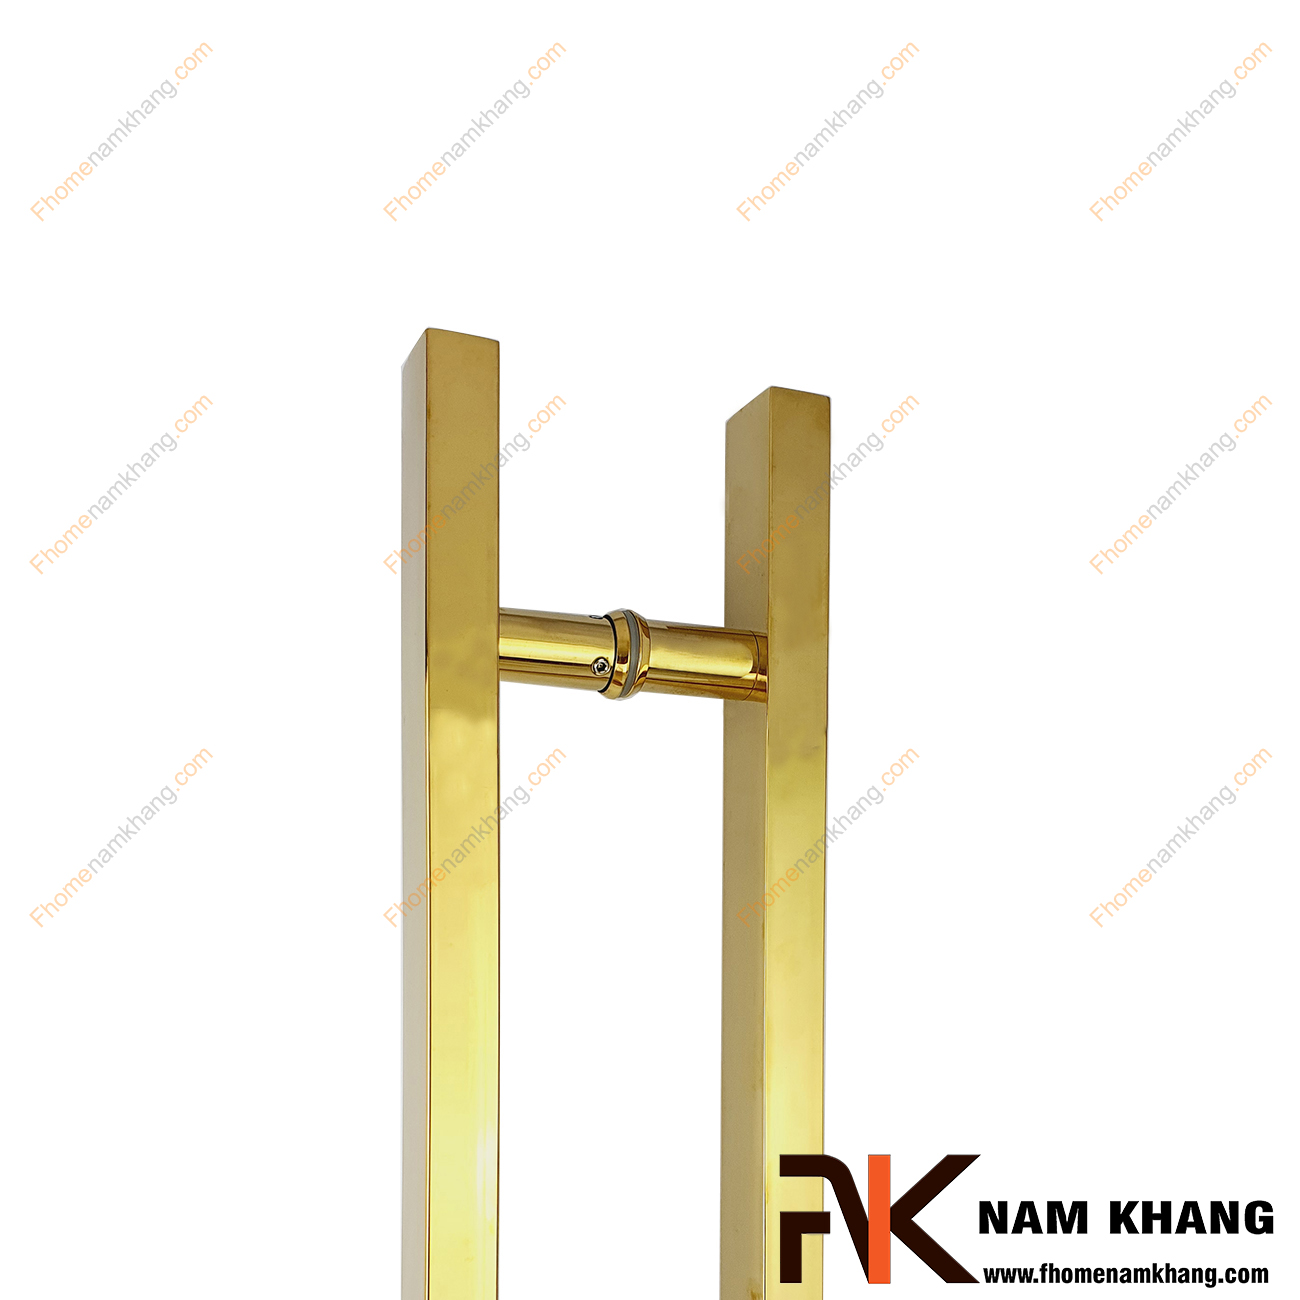 Tay nắm cửa chính dạng thanh vuông màu vàng bóng NK900-V201 được sản xuất từ chất liệu cao cấp, sử dụng được cho mọi loại cửa với nhiều chất liệu từ gỗ, kính, nhôm,...